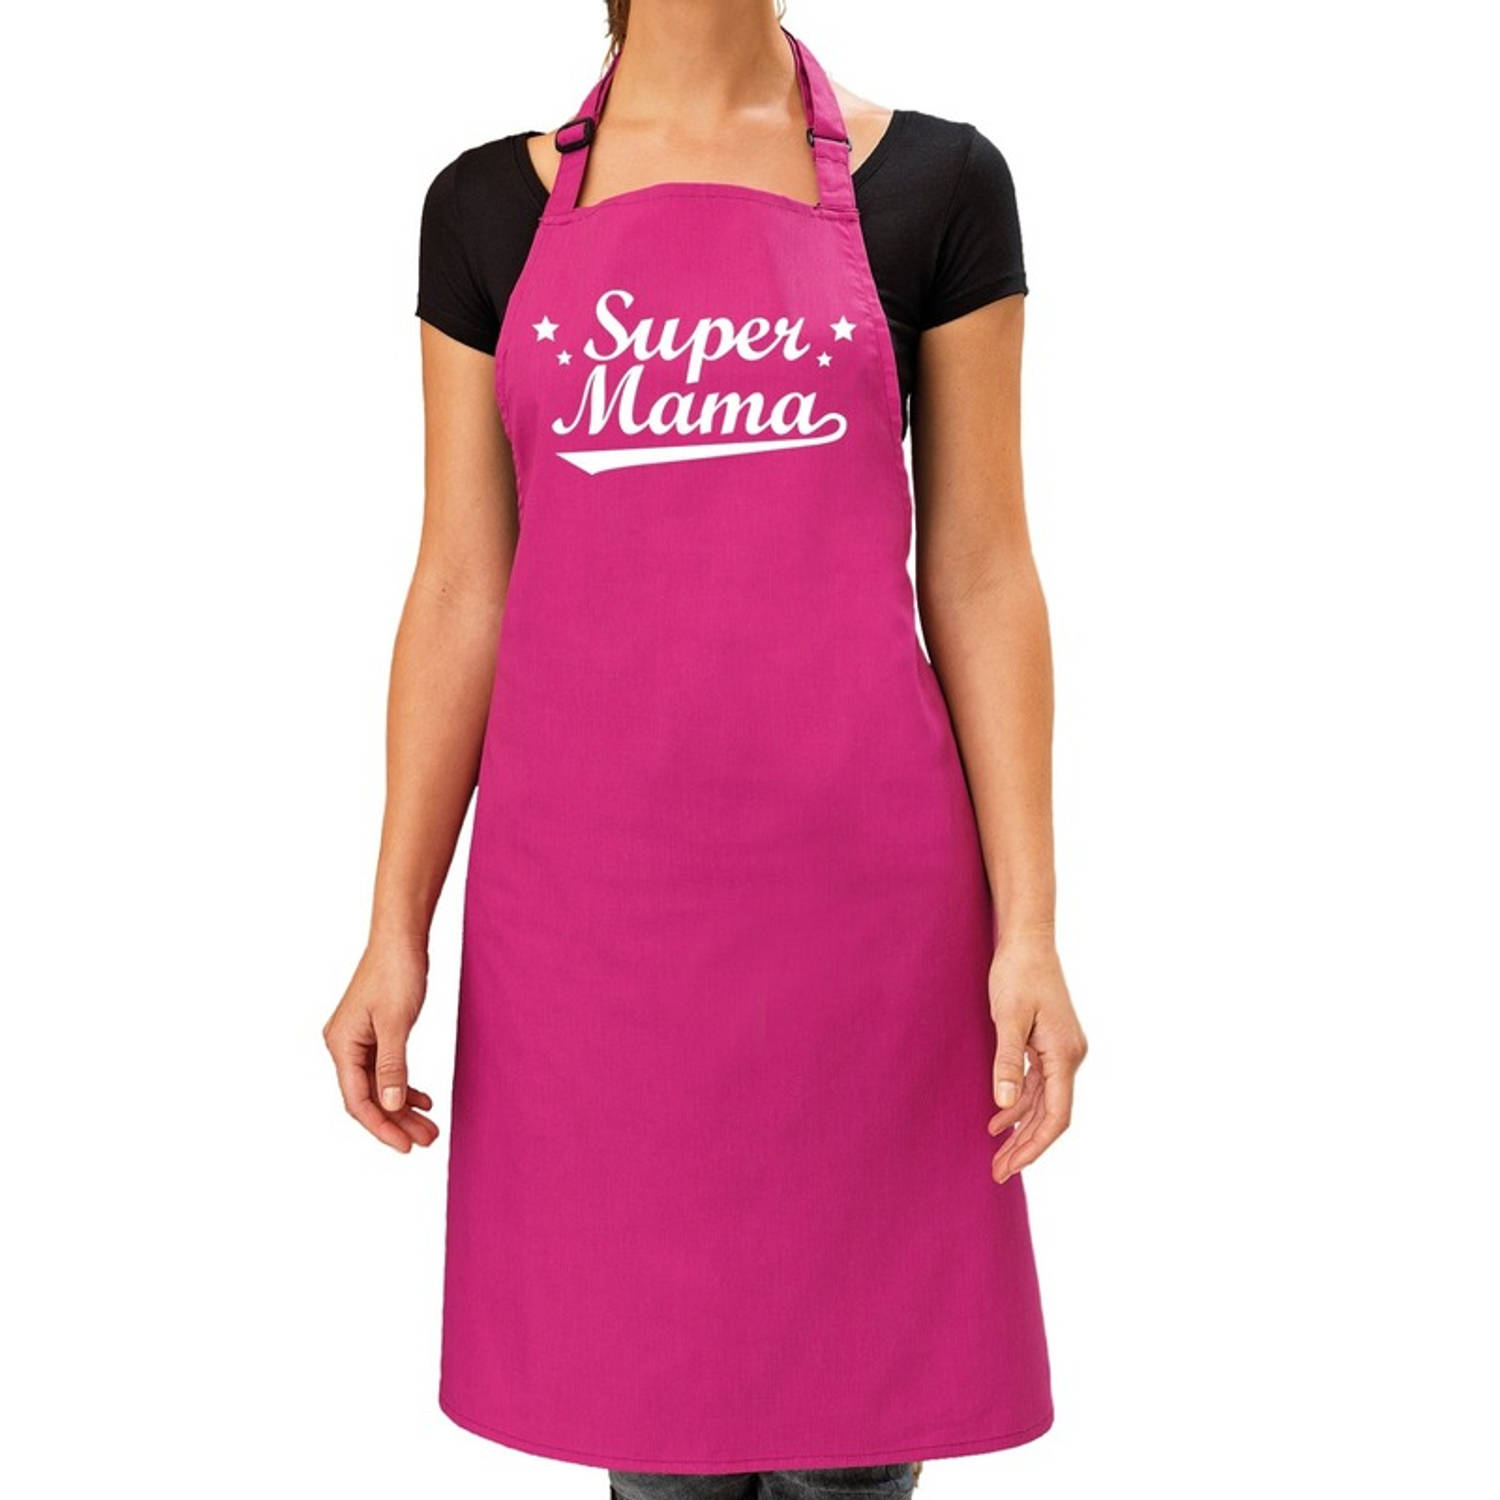 Super mama kado bbq-keuken schort roze voor dames Feestschorten